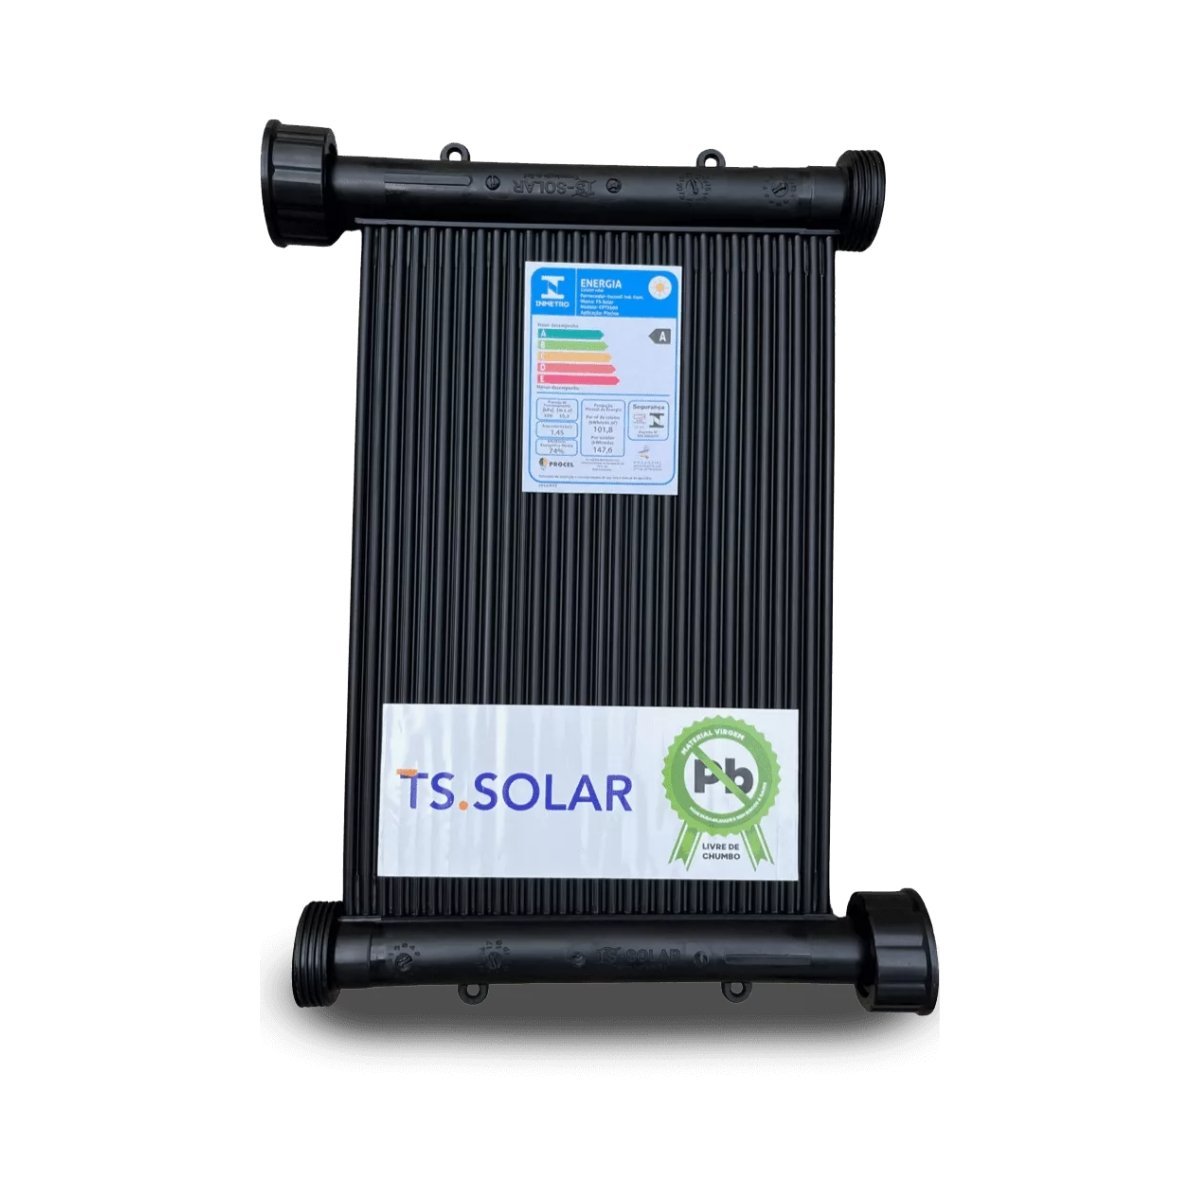 Kit Aquecedor Solar Piscina 25placas 2 Metros Ts-solar Rosca - 5